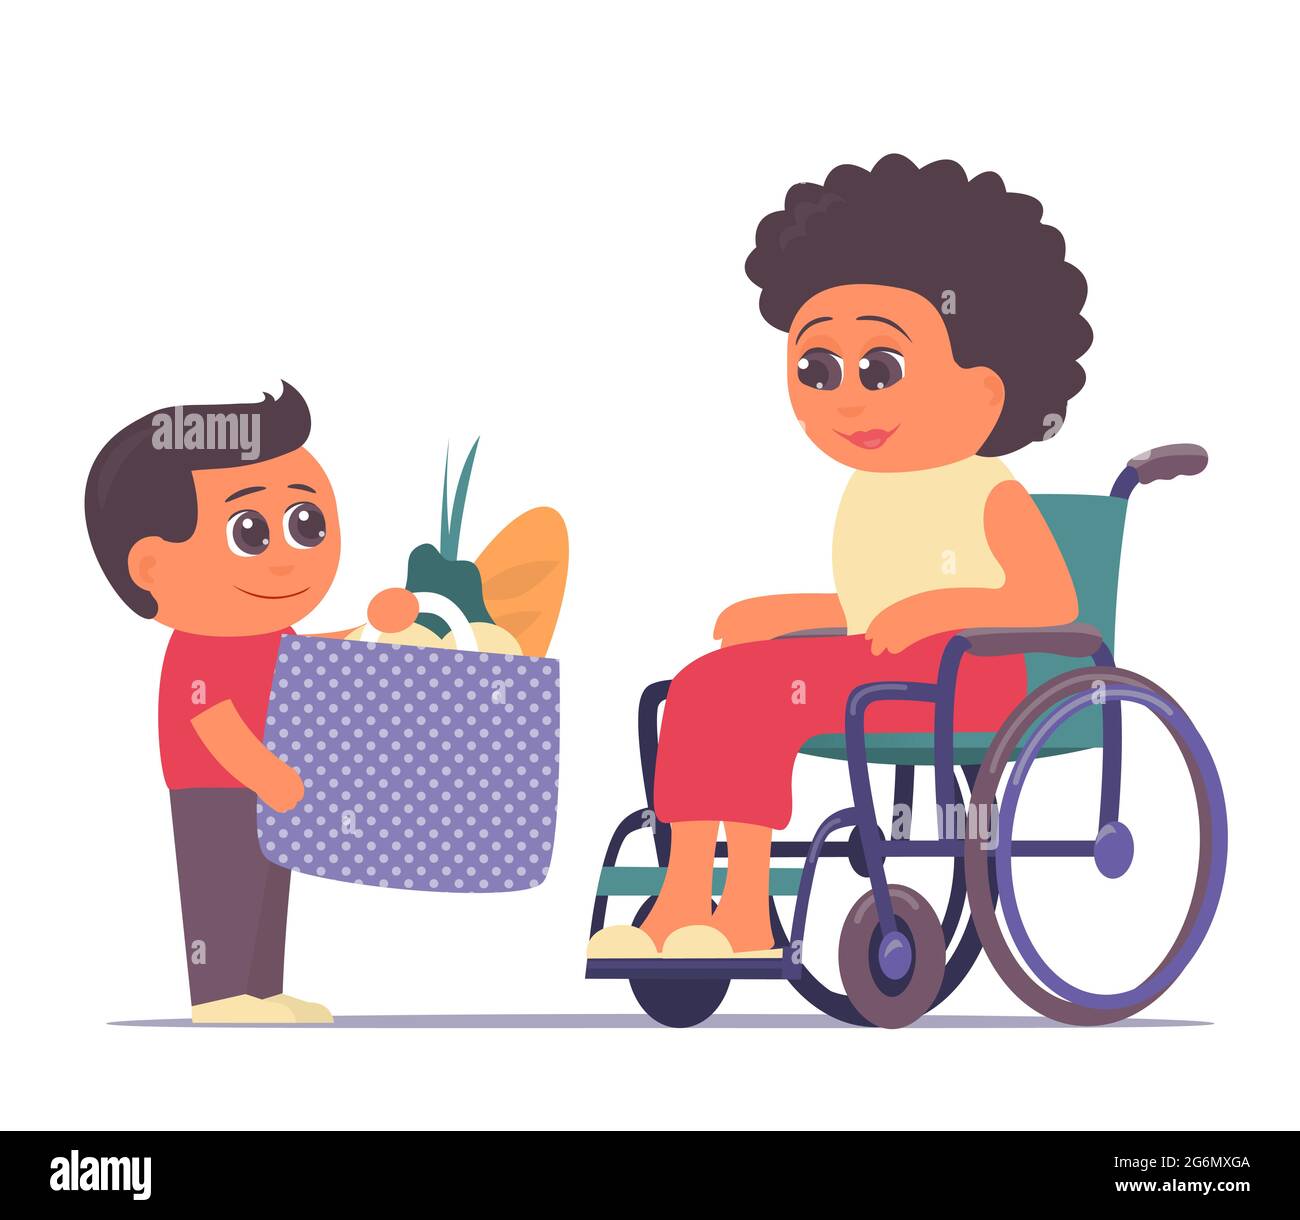 Un petit-fils a apporté de la nourriture à sa grand-mère dans un fauteuil roulant. Prendre soin et aider les personnes âgées. Valeurs familiales. Illustrateur de dessin animé isolé vectoriel Illustration de Vecteur